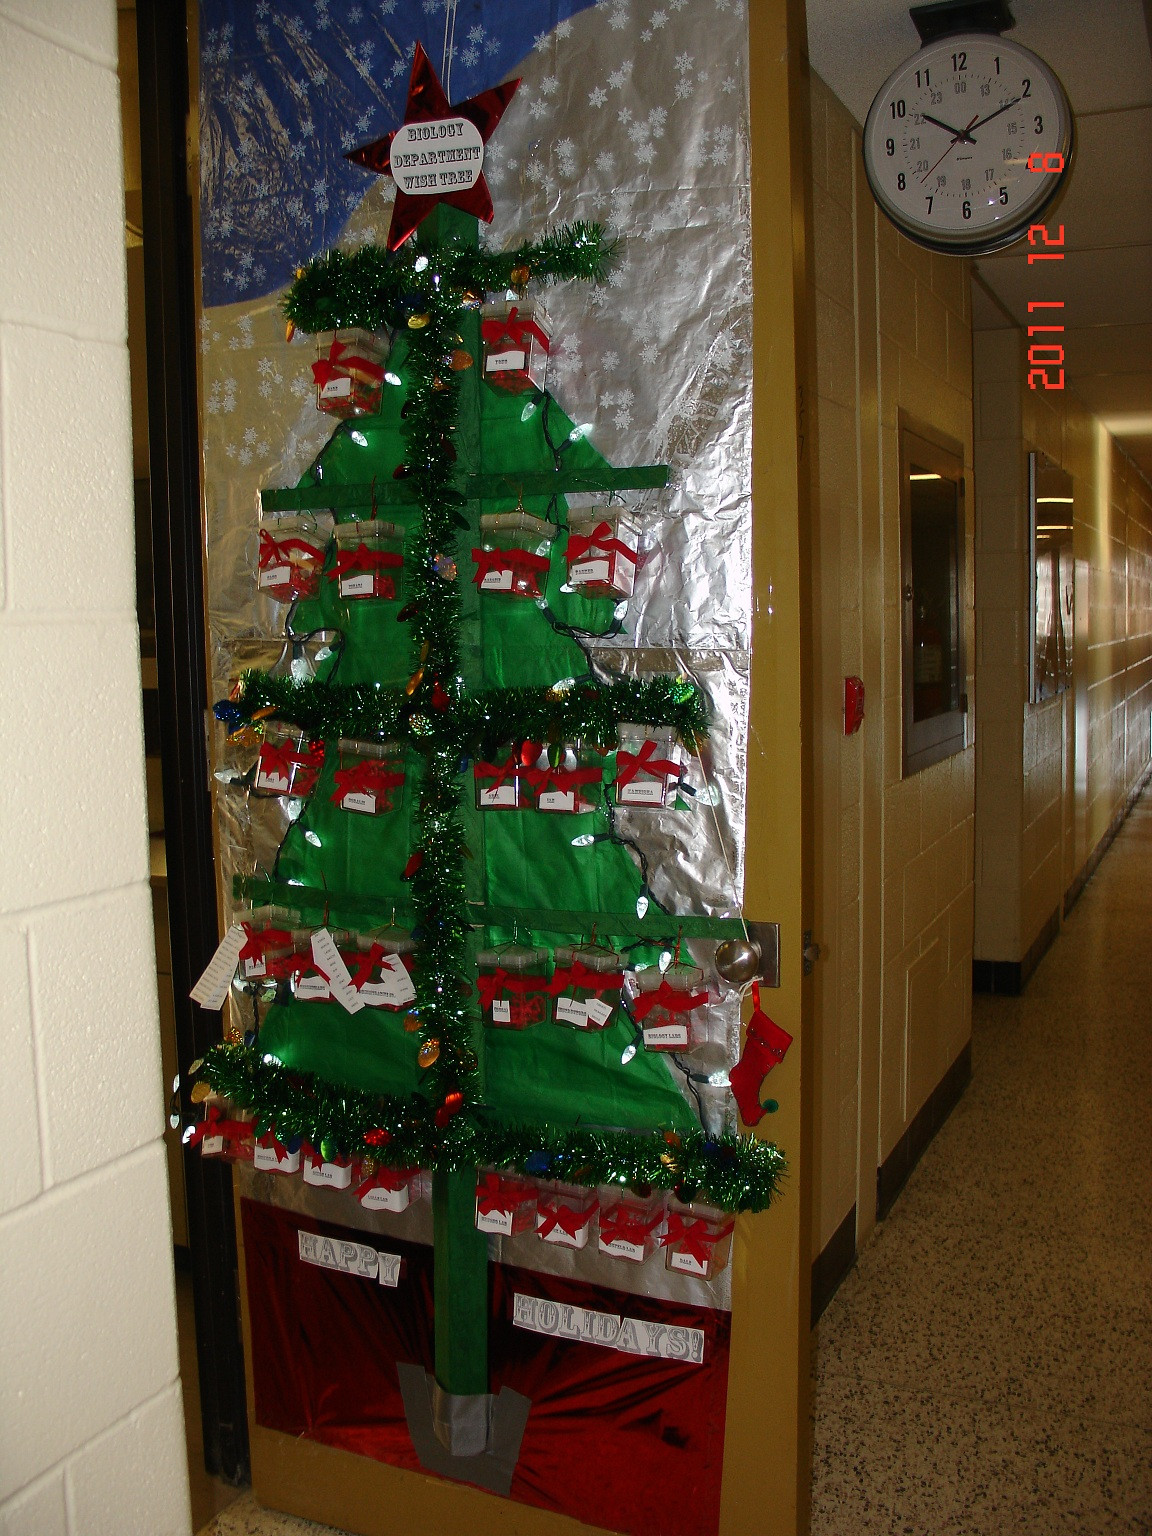 Christmas Door Decoration Ideas
 UW Biology Graduate Student Association Christmas door